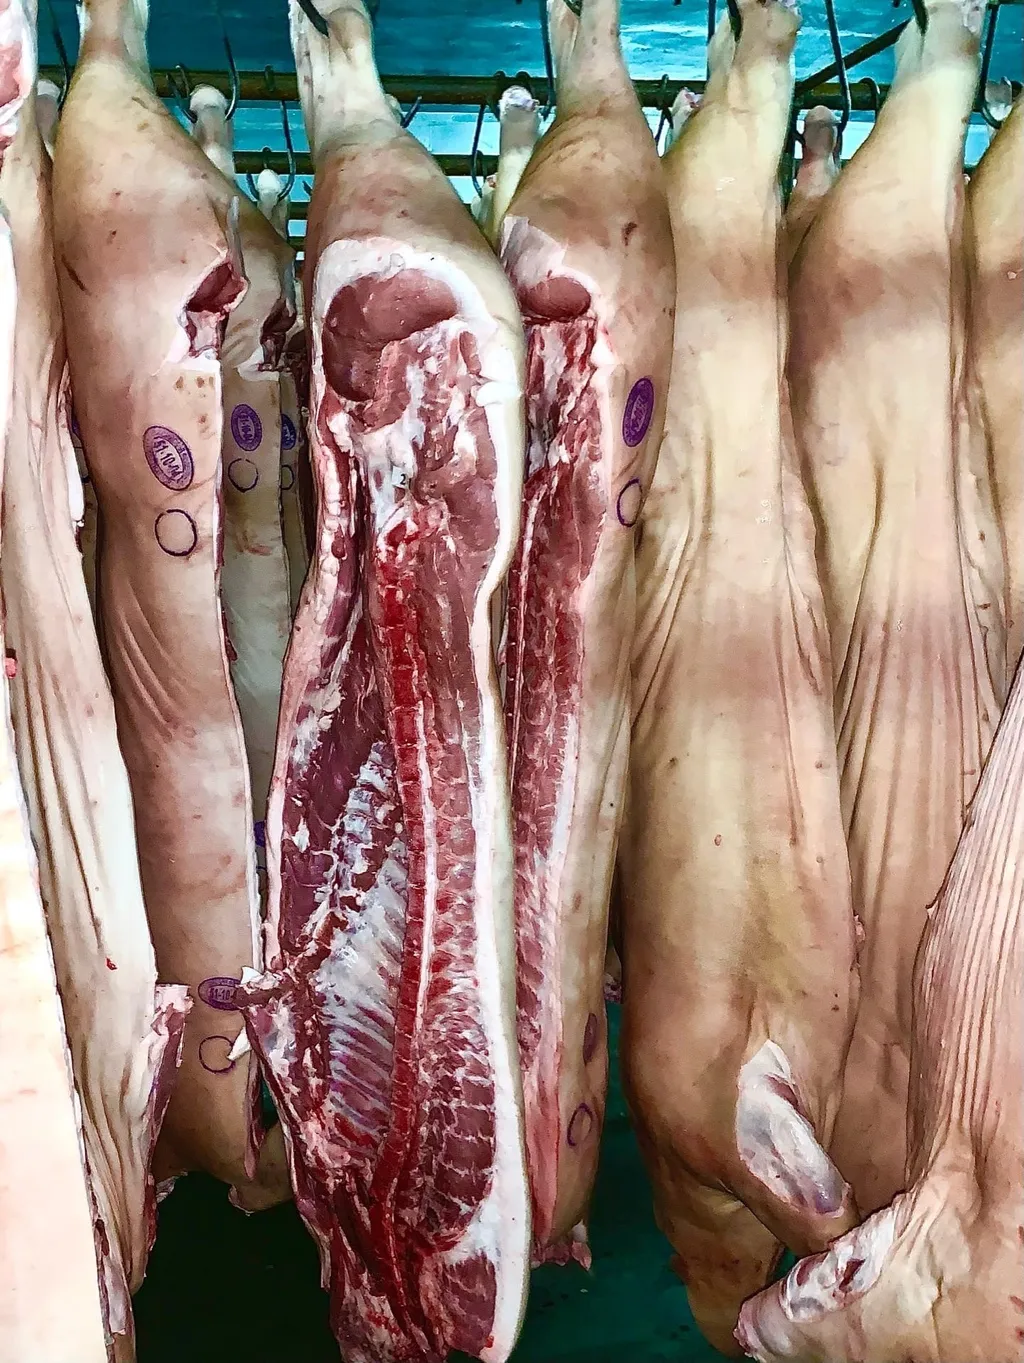 фотография продукта Мясо свинины